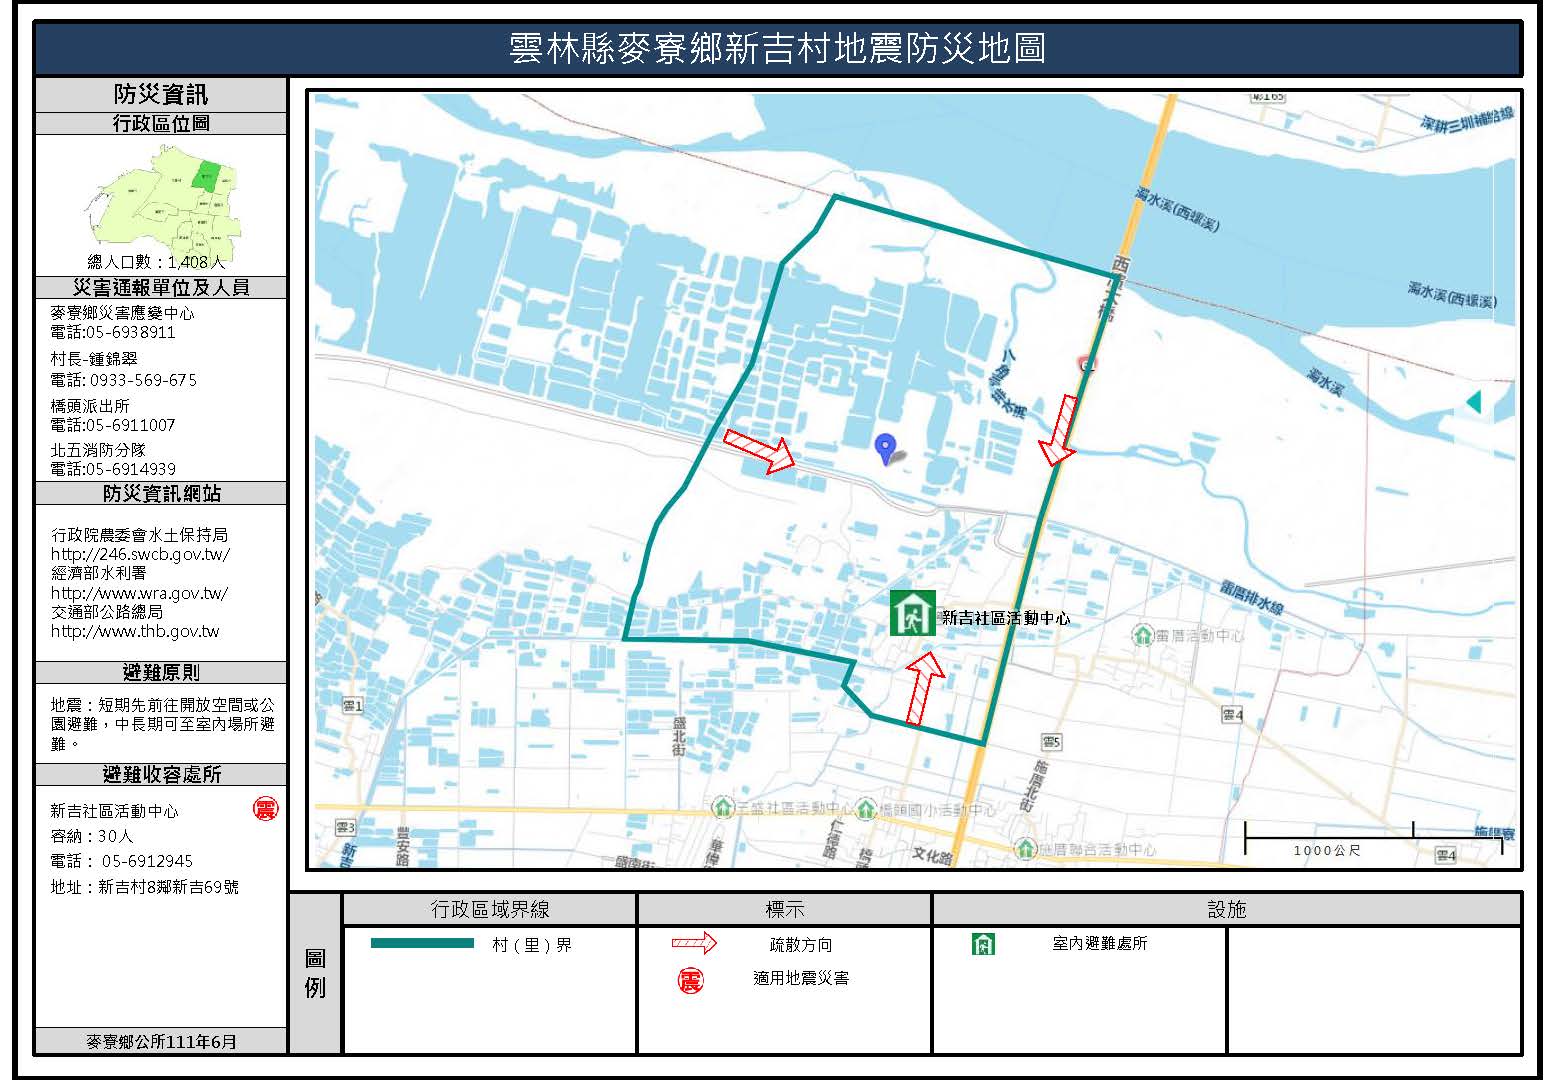 新吉村地震簡易防災地圖